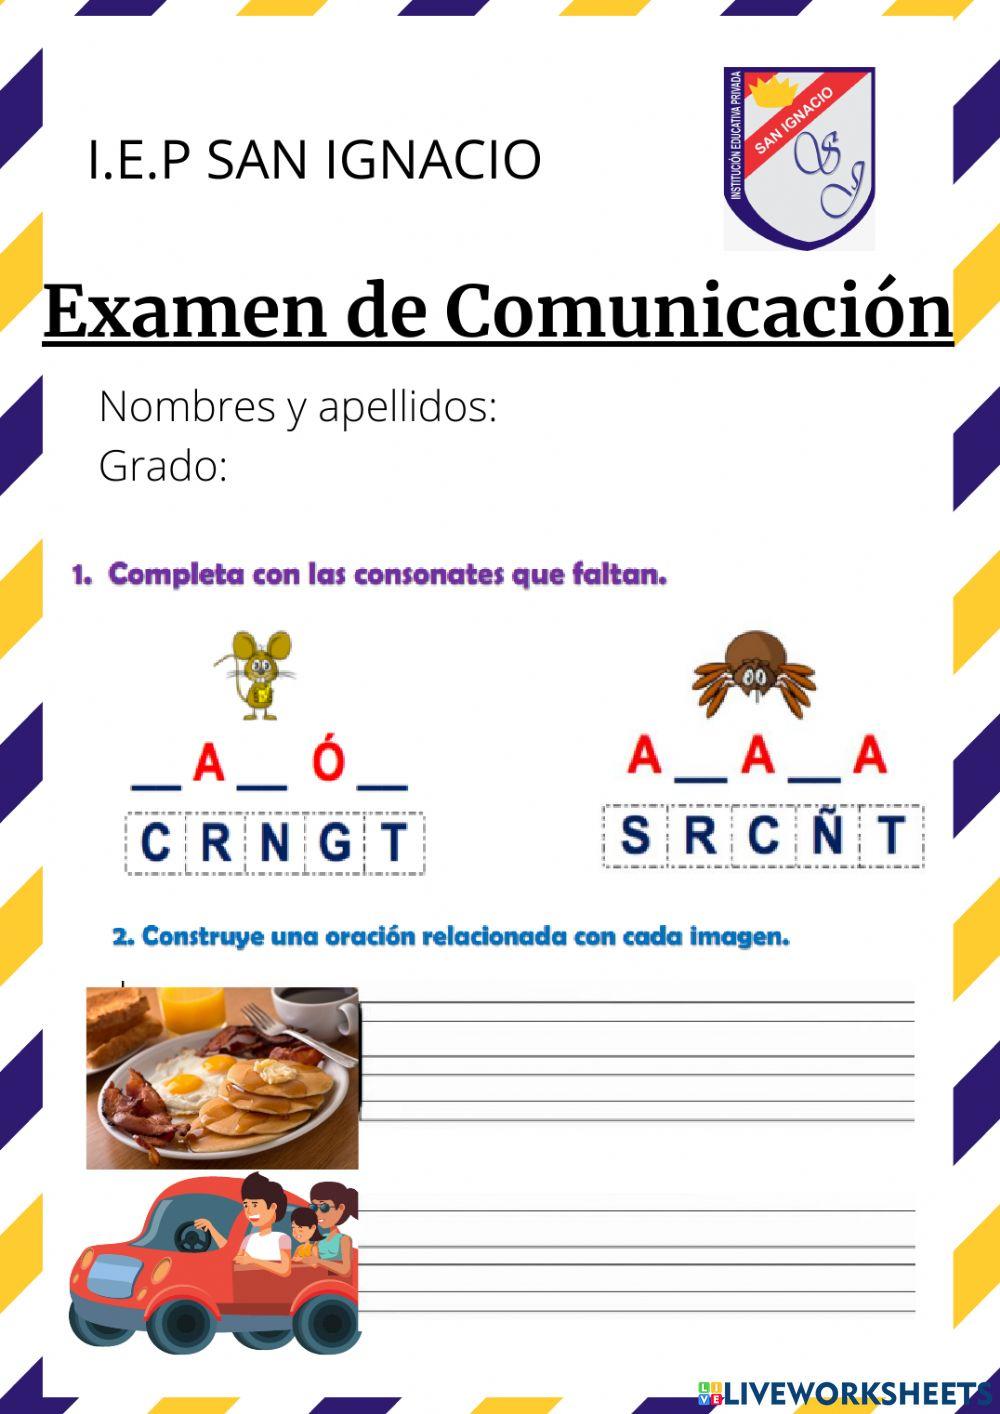 Examen mensual de Comunicación